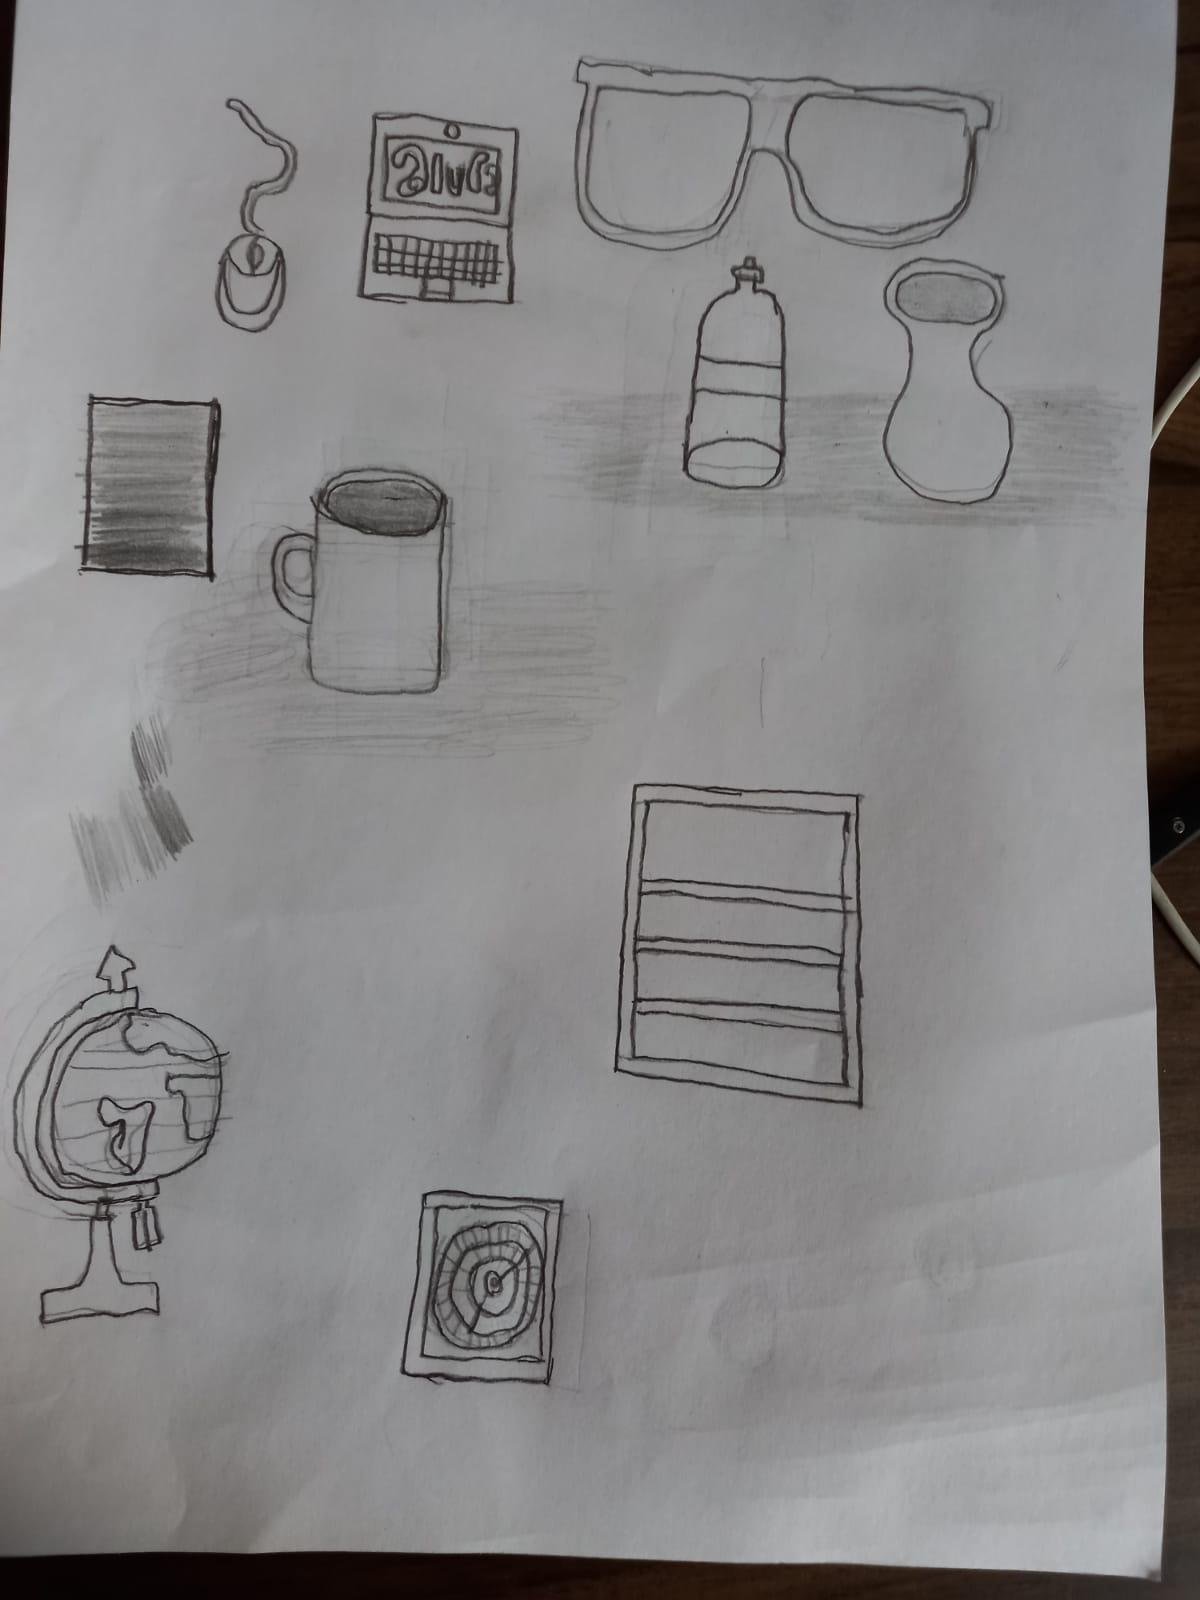 Tentei desenhar algumas coisas que estavam perto, um mouse, notebook, garrafa, caneca, óculos, apontador de globo, relógio ( que ficou péssimo) e uma cômoda. Estou com muita dificuldade de criar formas como círculos e retângulos sem ficarem tortos 